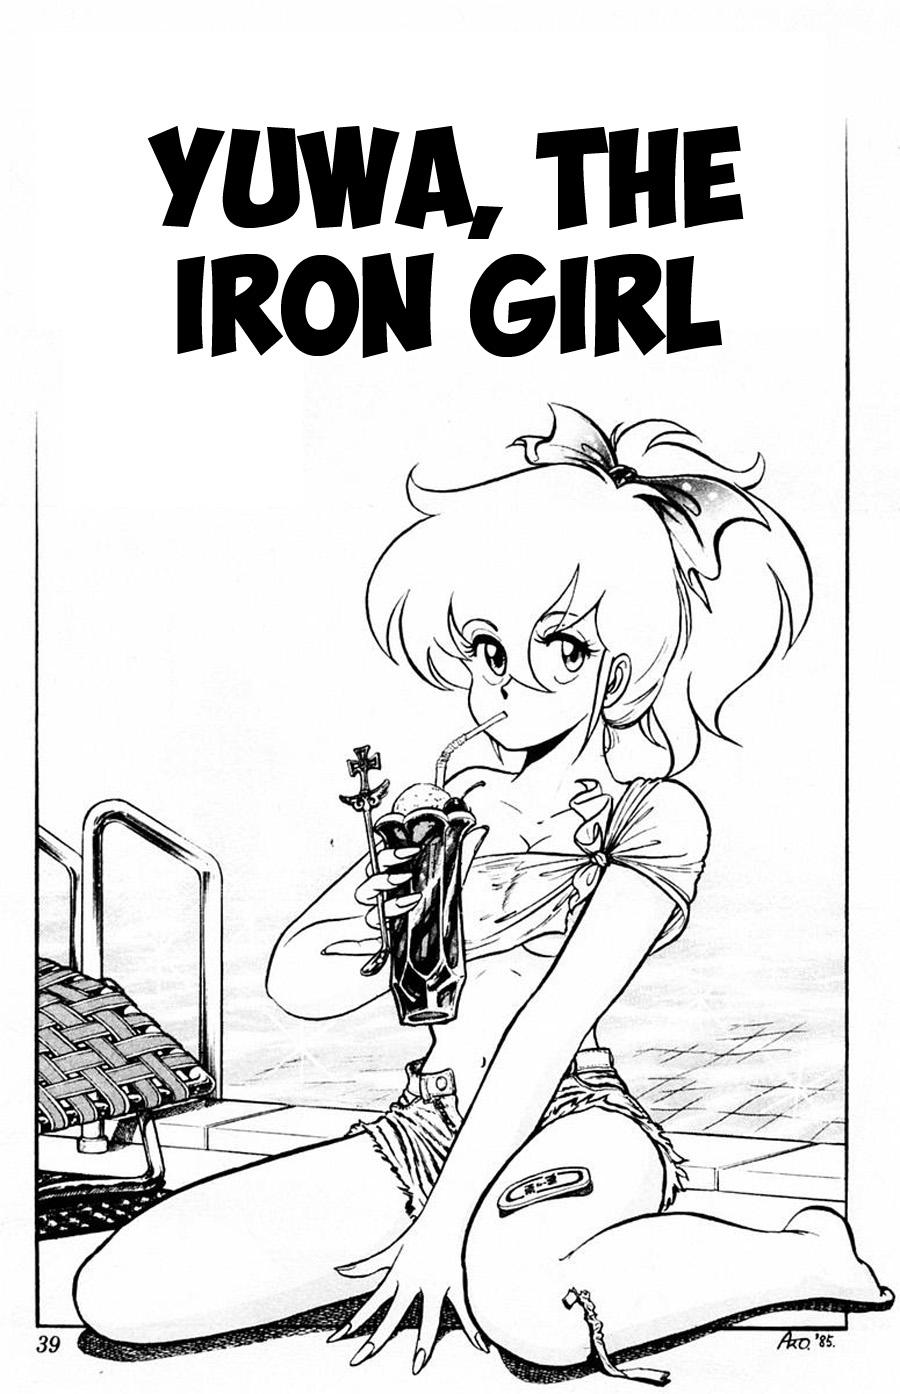 Yuu & Mii Vol. 2 Ch. 8 Yuwa, The Iron Girl